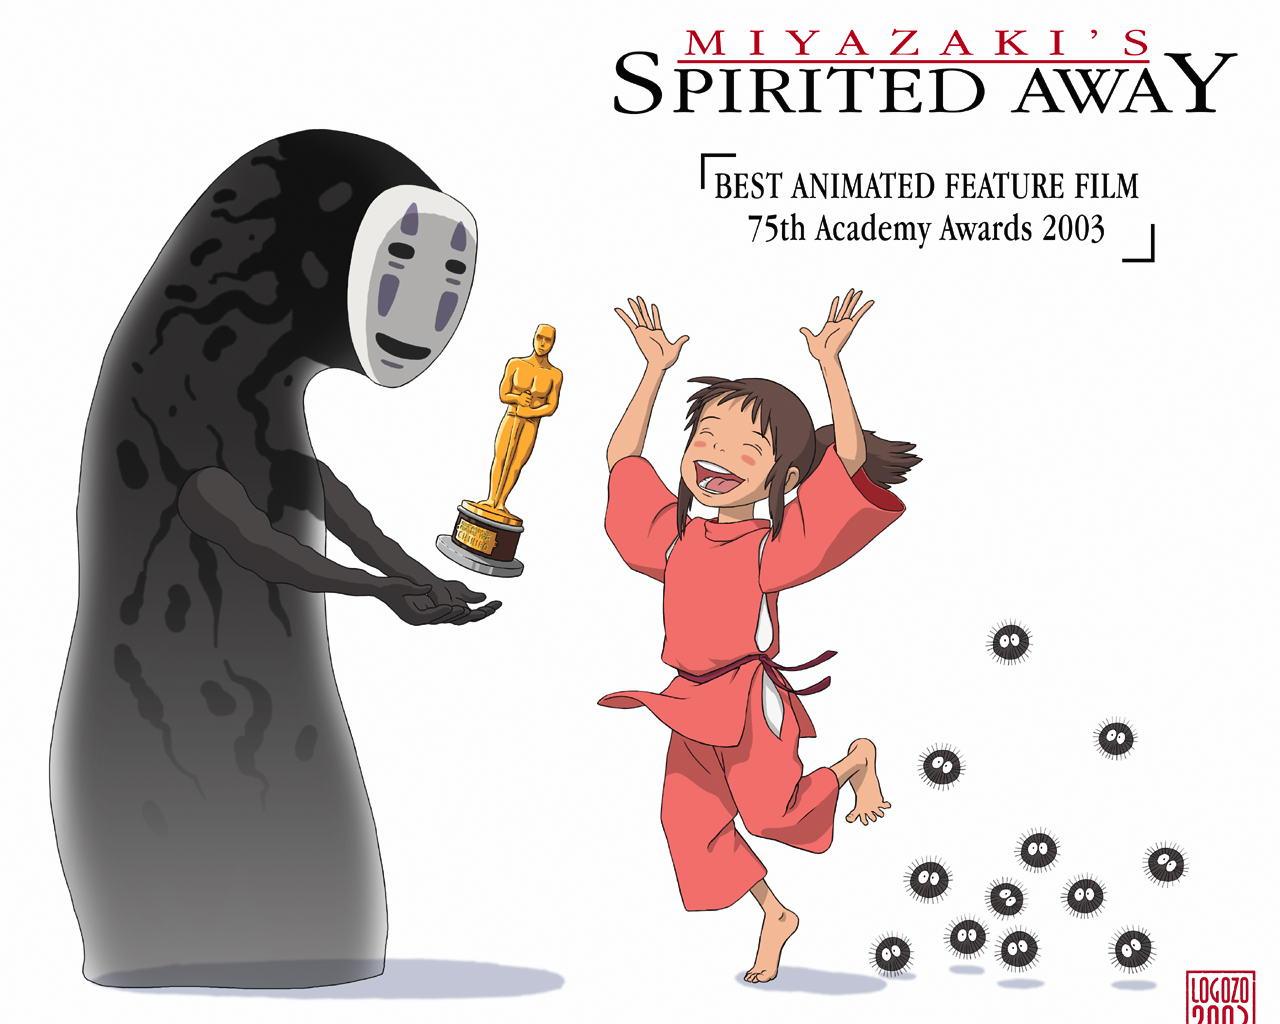 Spirited Away / Ruhların Kaçışı (2001) 1 – miyazaki spirited away award big